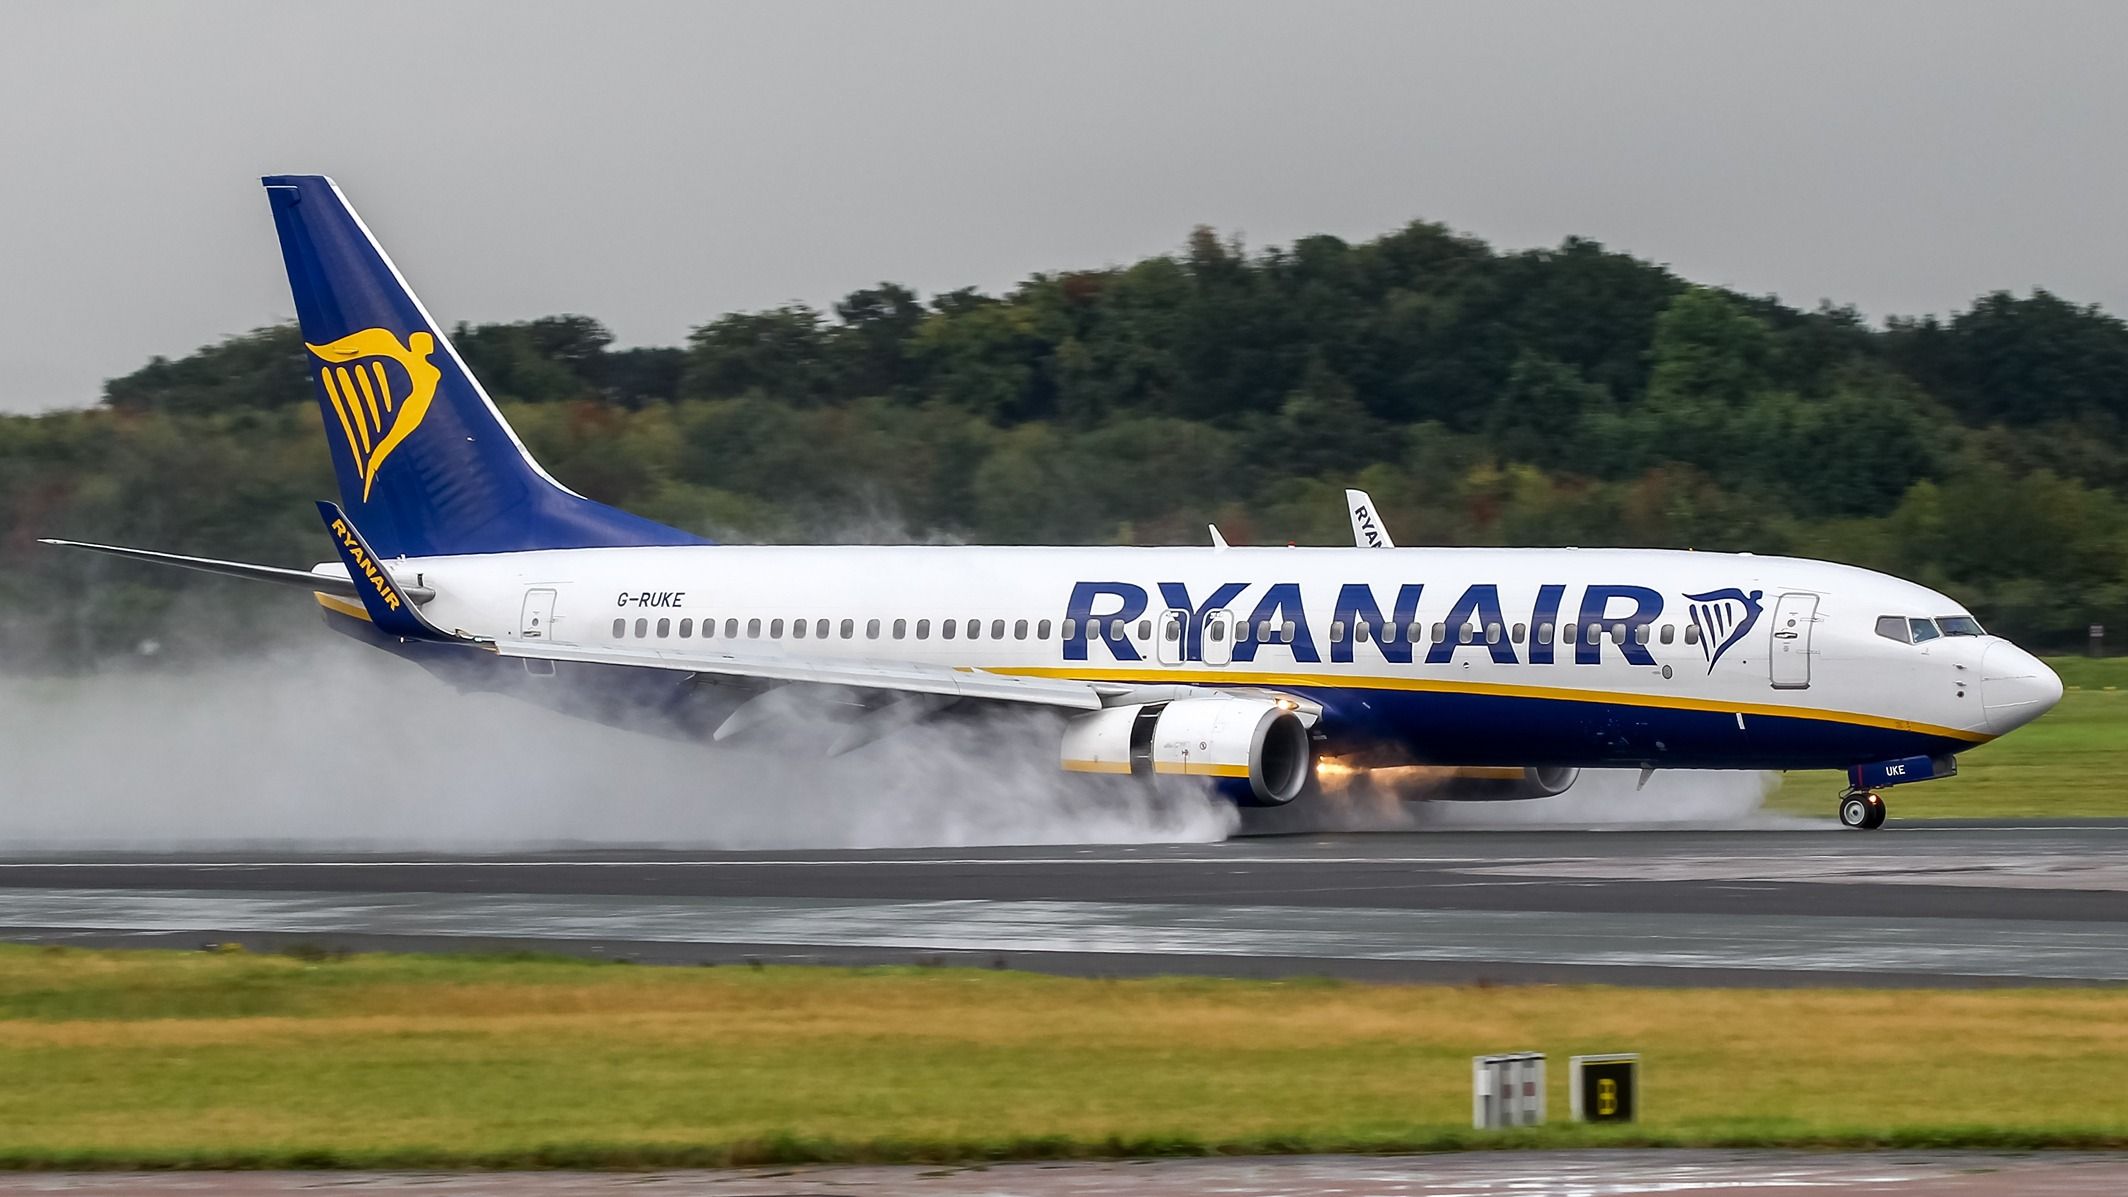 Ryanair Boeing 737-800 landing at Manchester Airport MAN